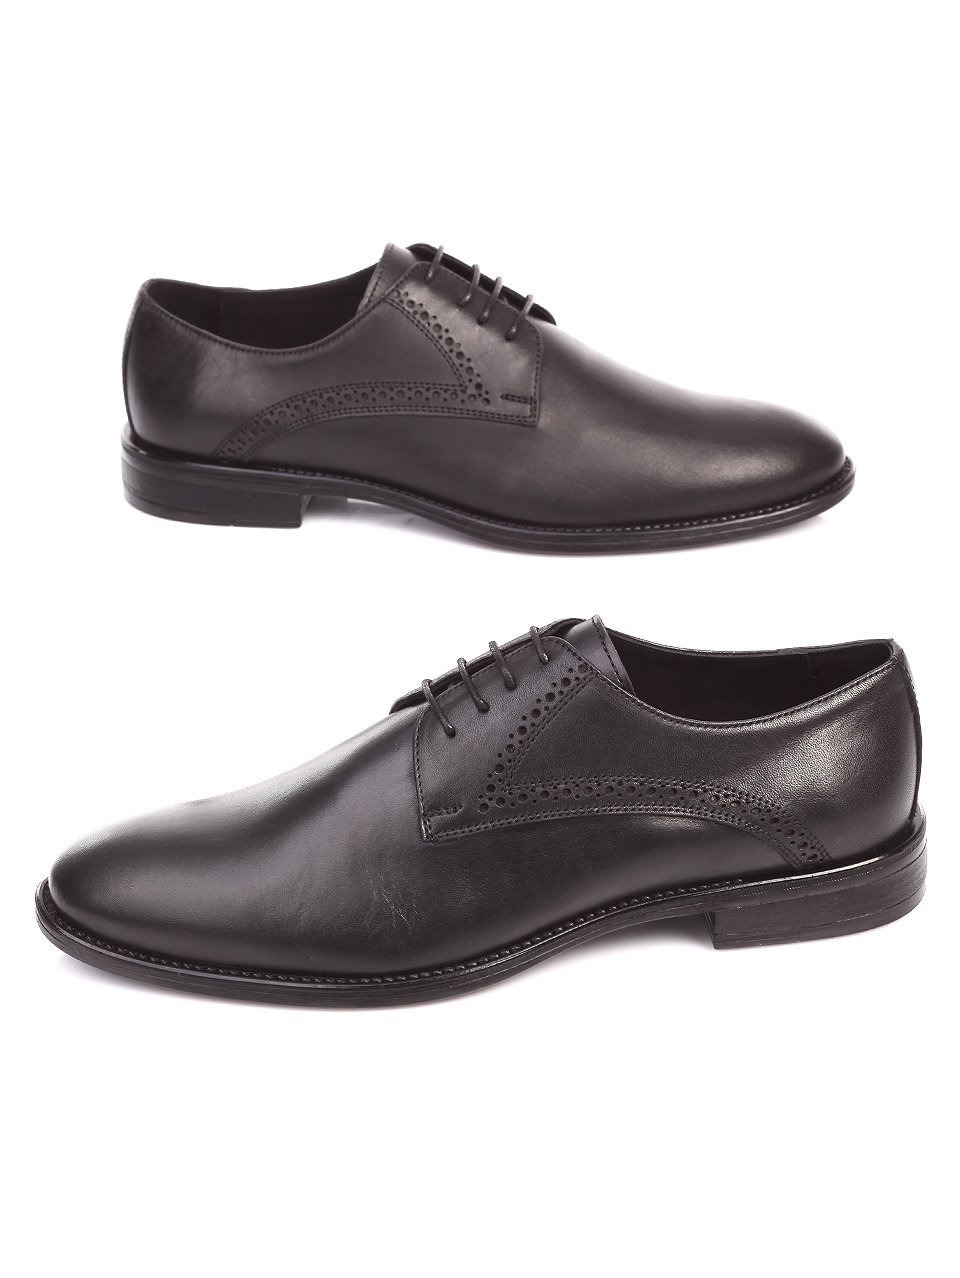 Елегантни мъжки обувки от естествена кожа 7AT-17565 black